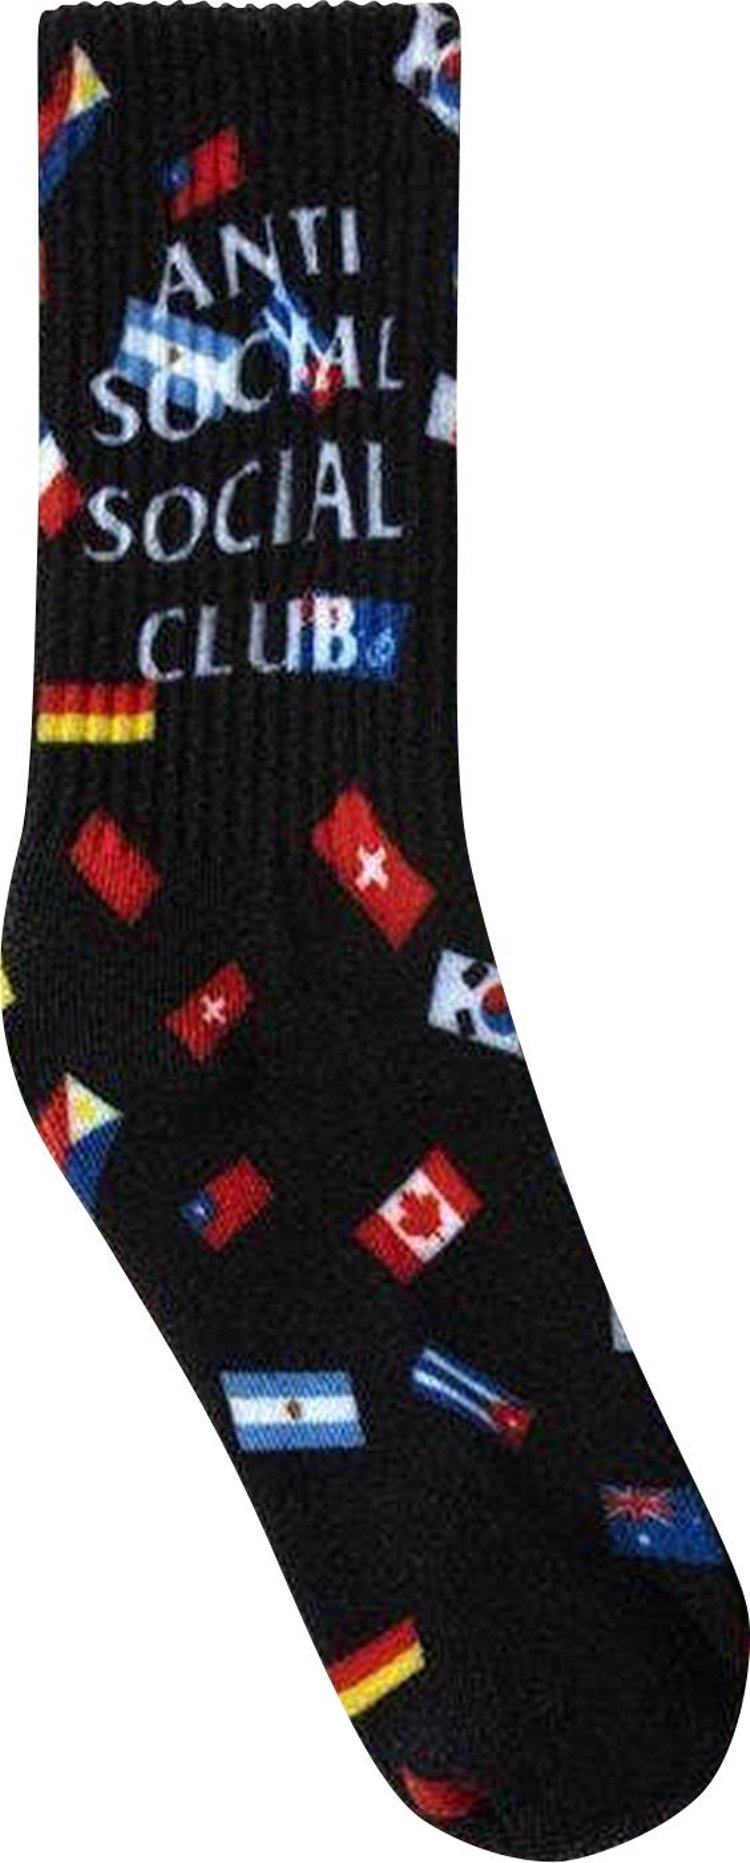 Anti Social Social Club Business Socks 'Black'